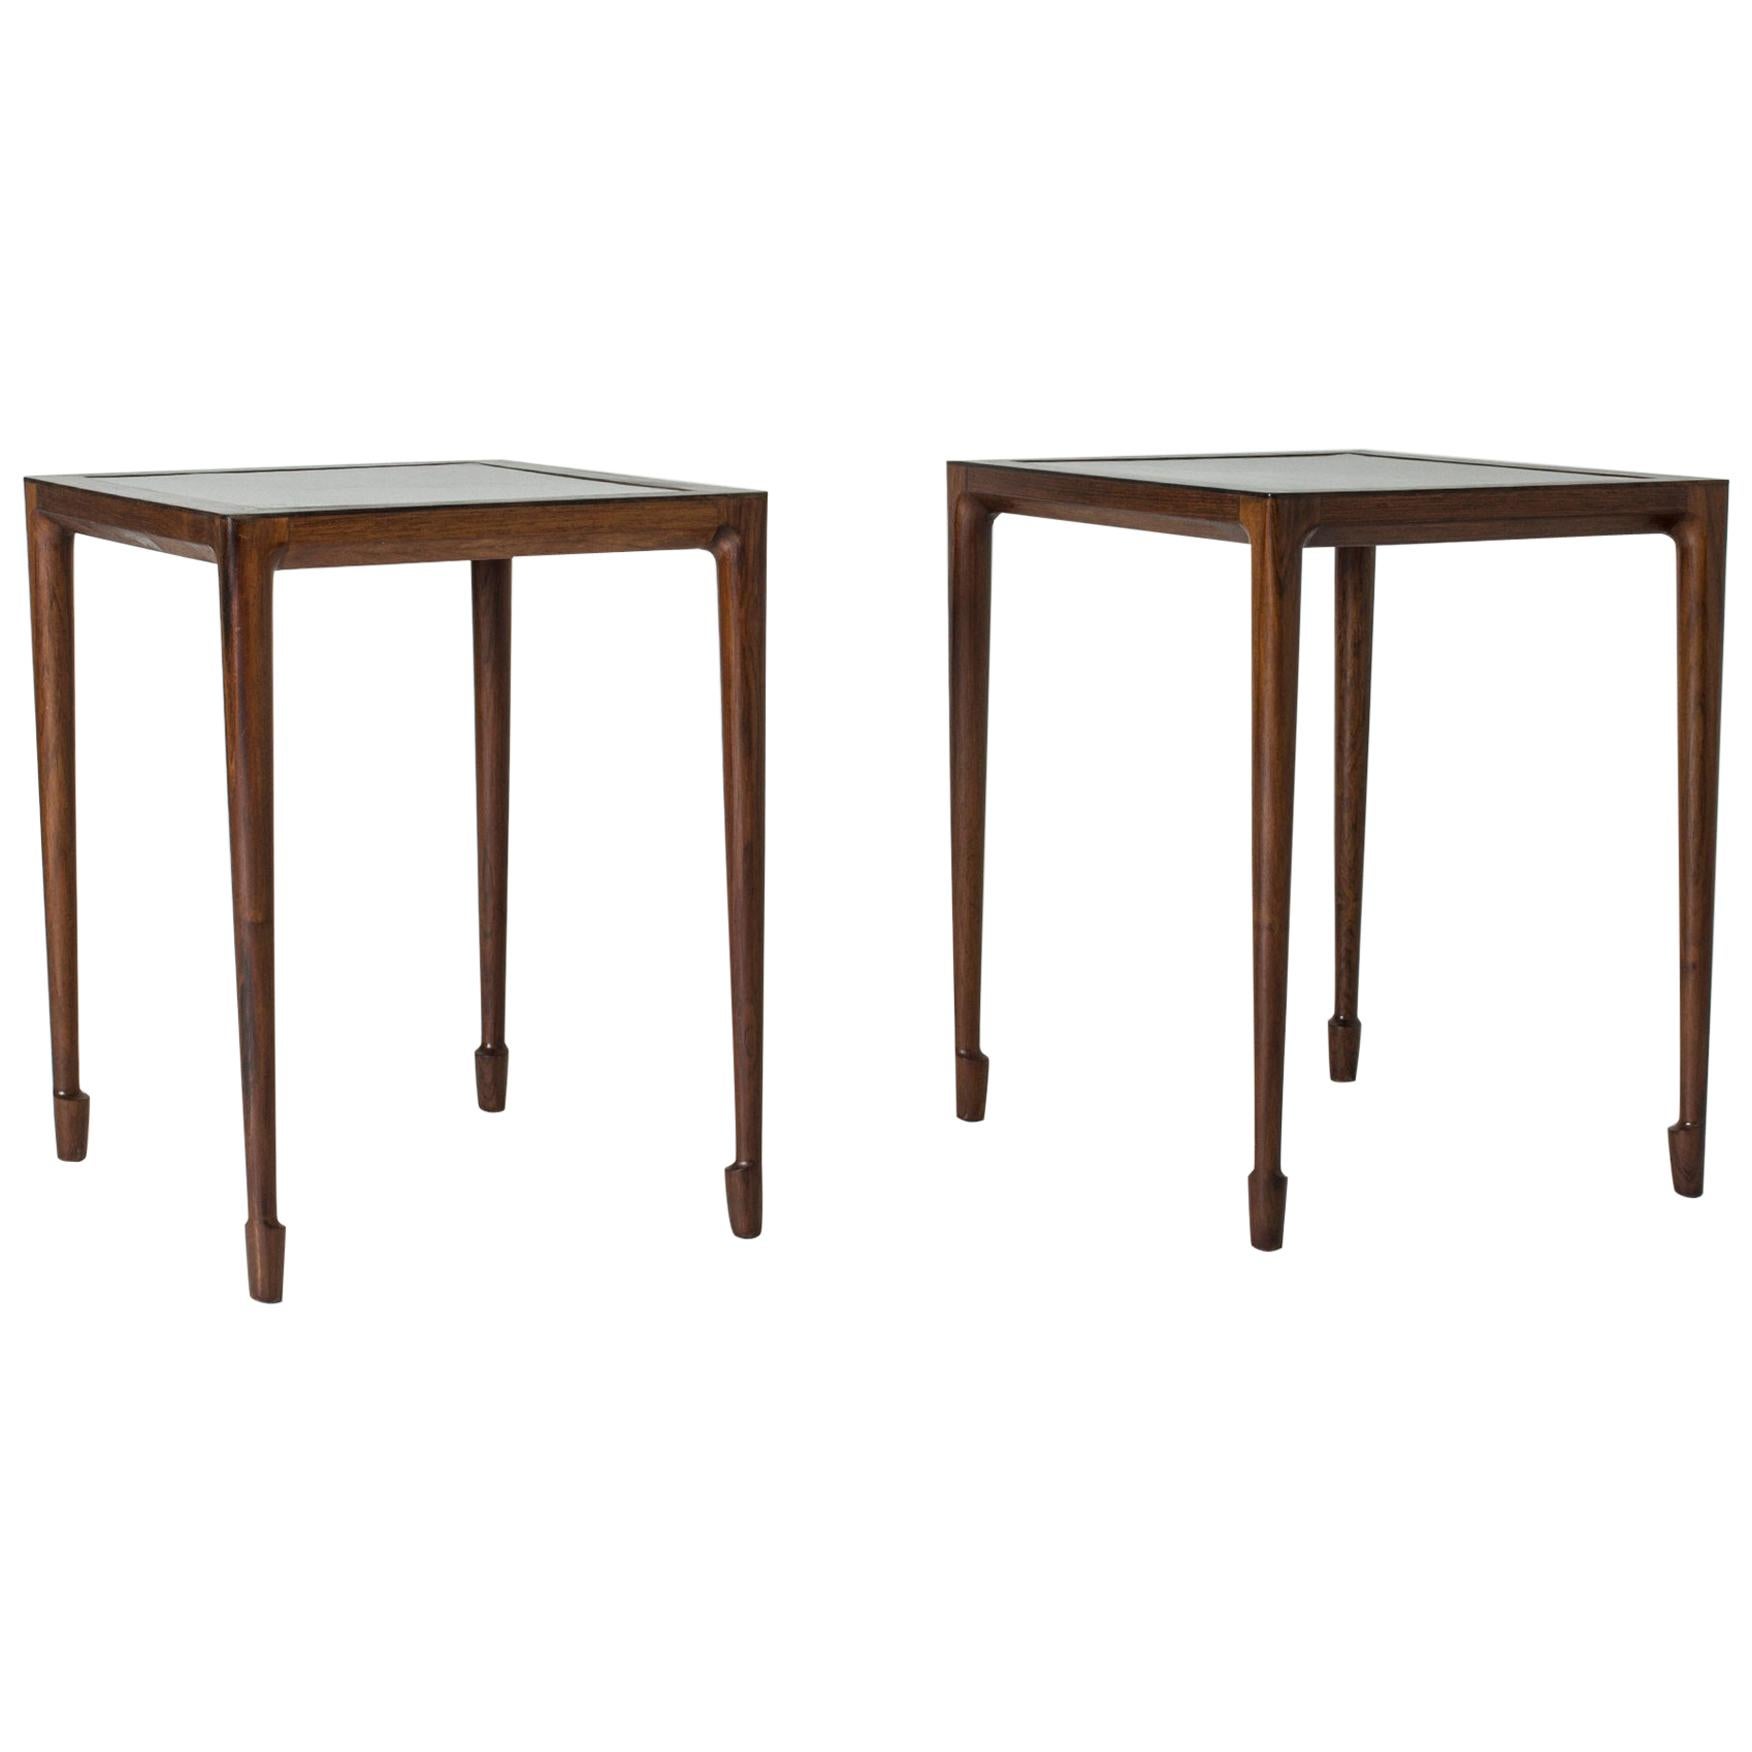 Pair of Rosewood Side Tables by Bernt Petersen